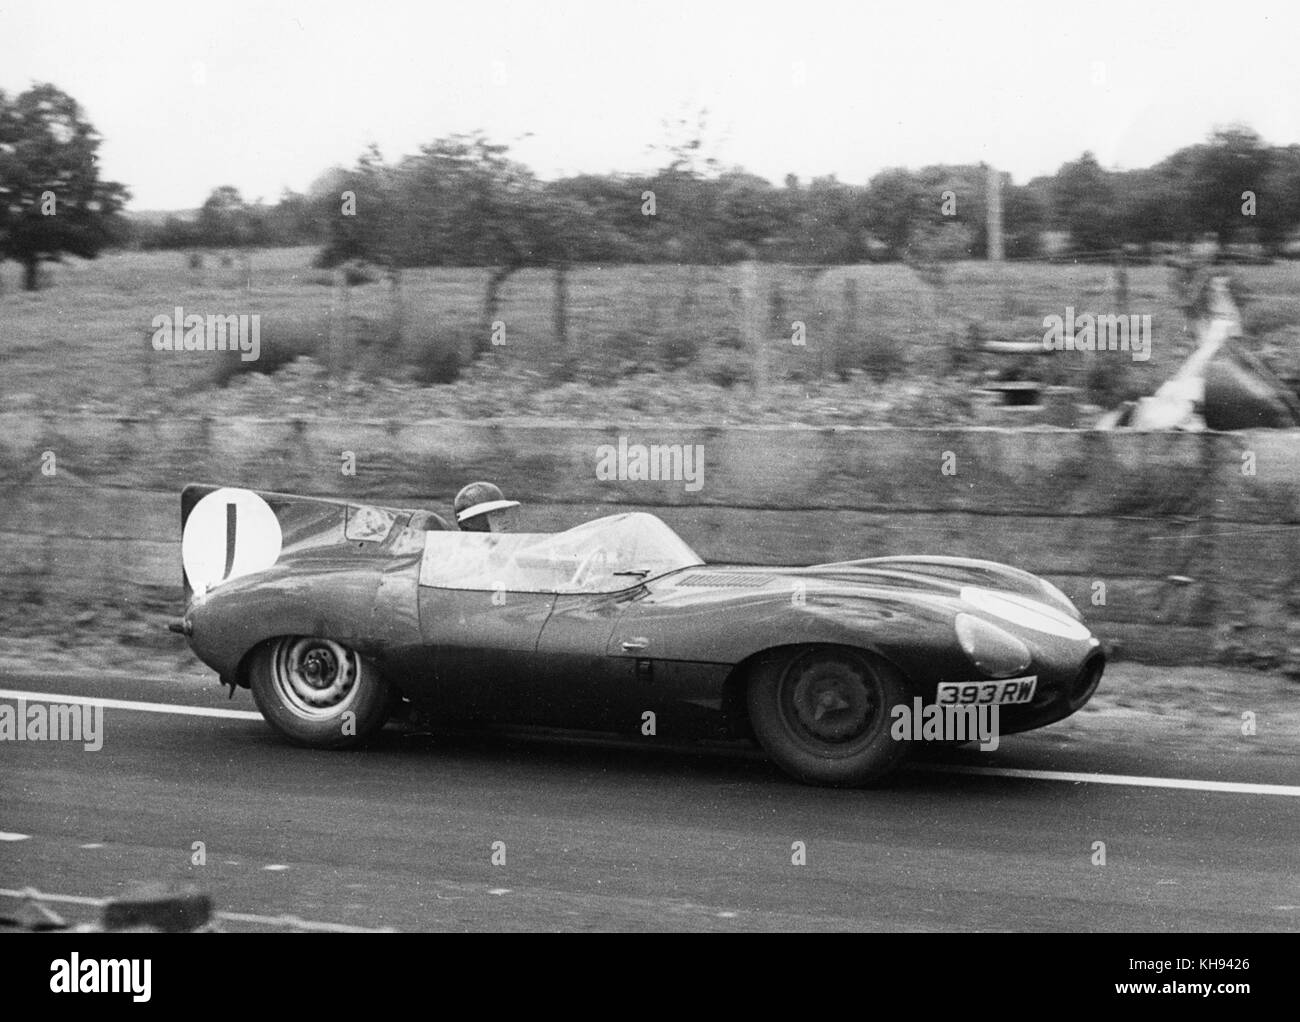 1956 Le Mans Jaguar D type. Mike Hawthorn - Ivor Bueb. Stock Photo